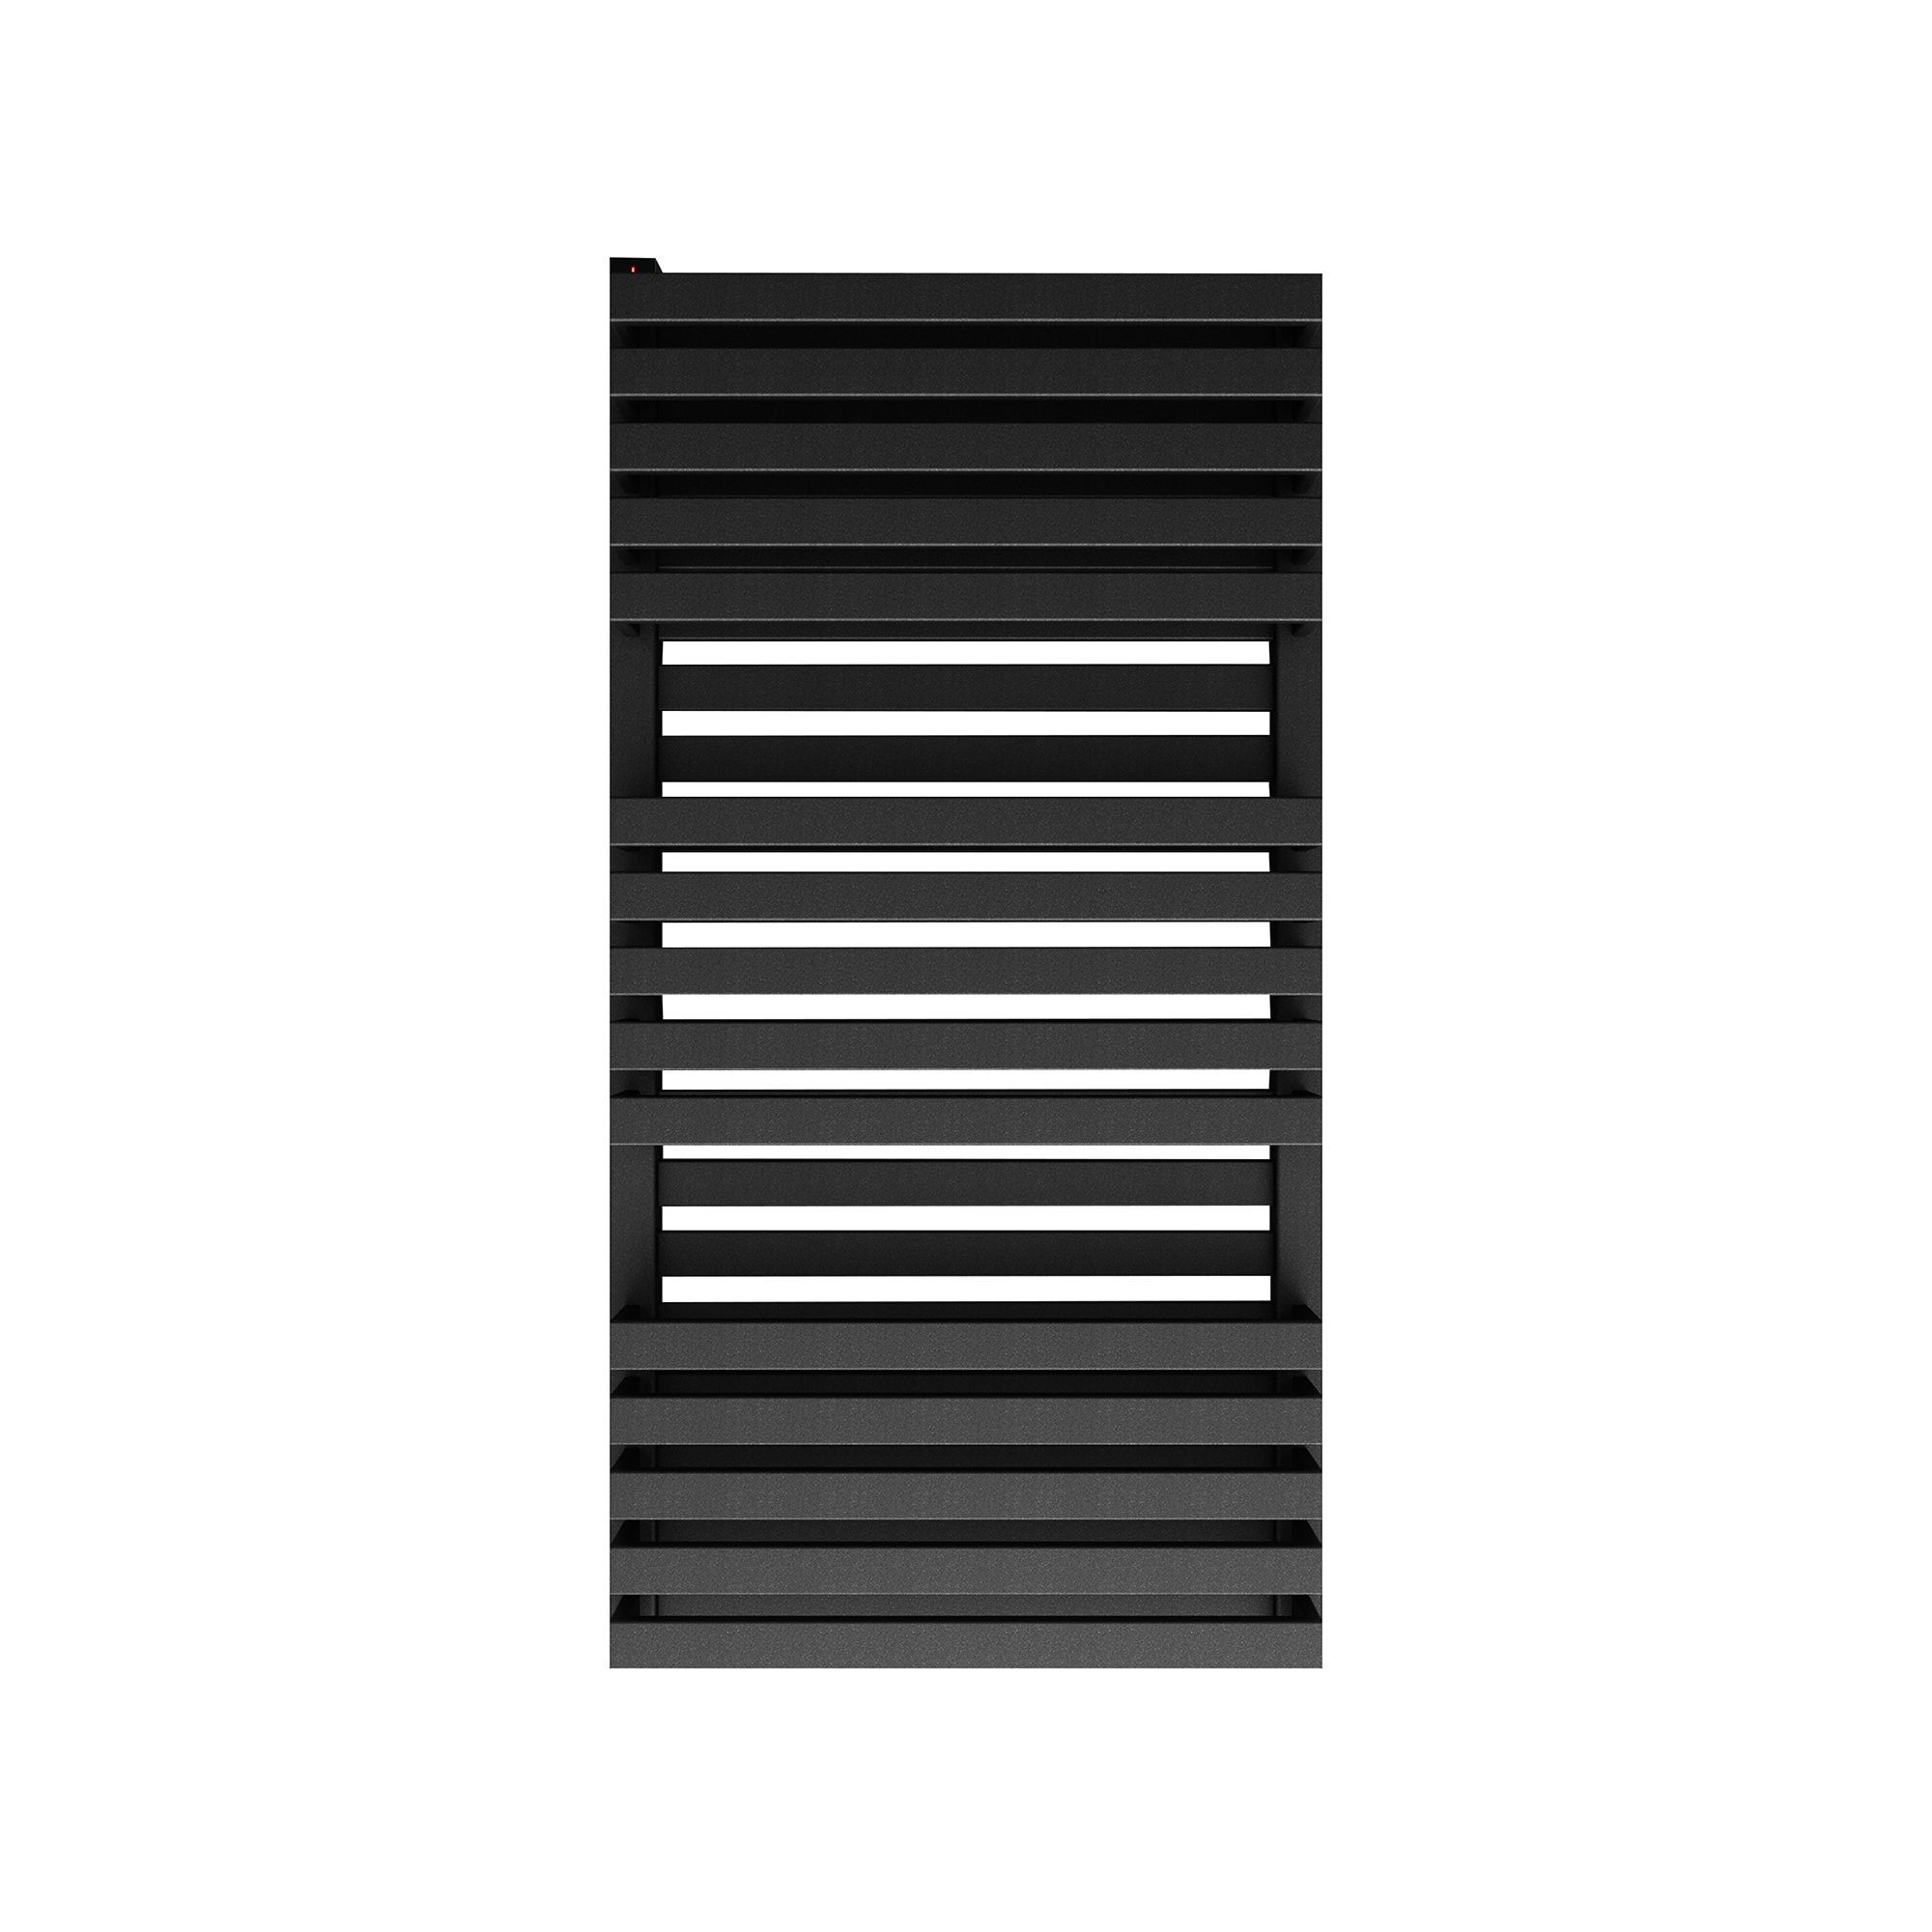 Terma Quadrus Metallic black Towel warmer (W)450mm x (H)870mm